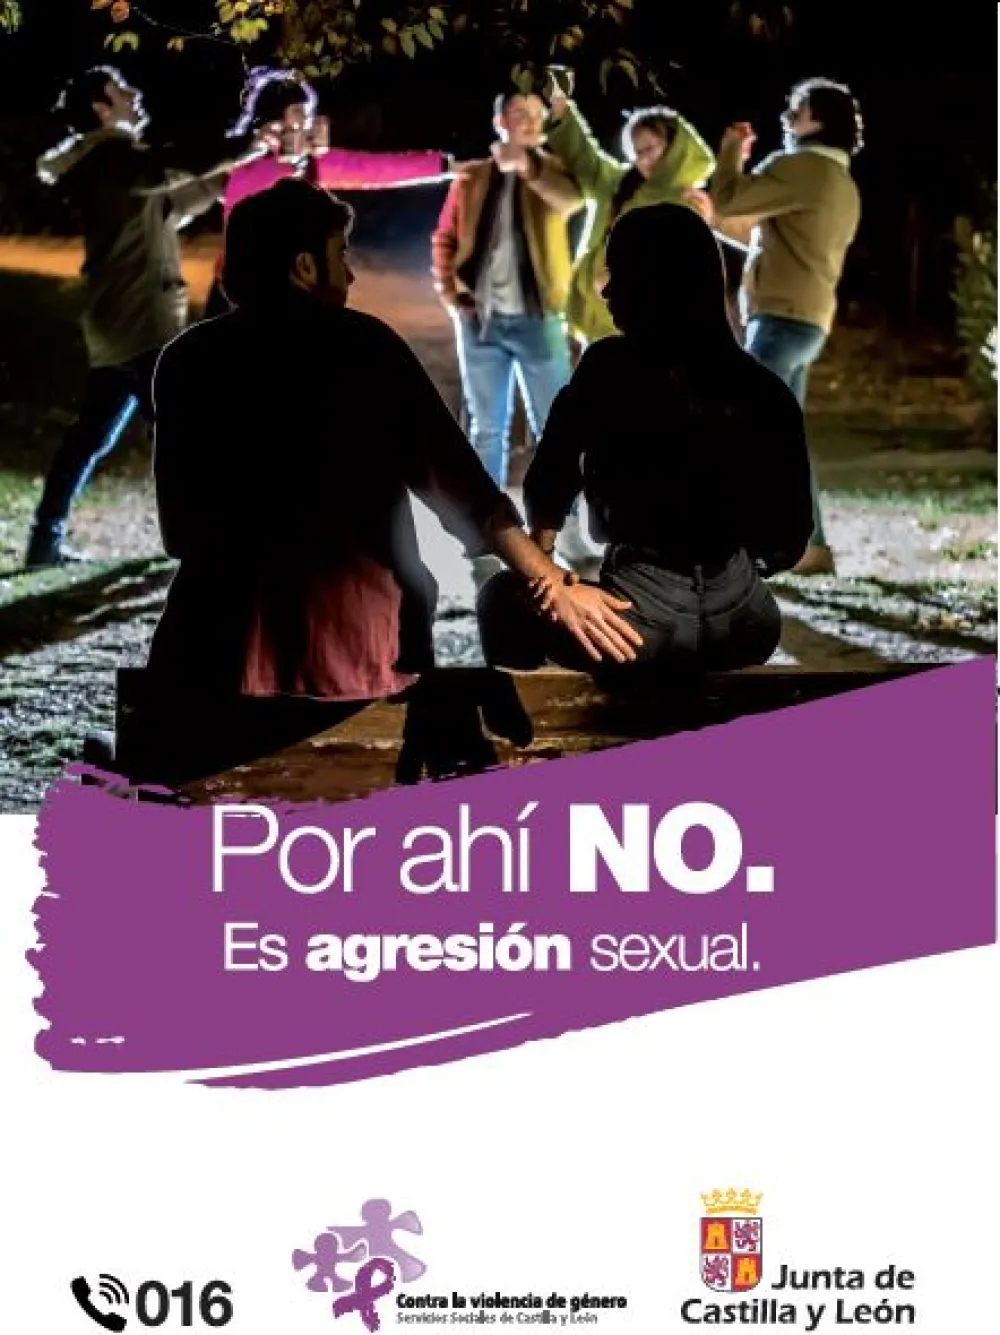 Foto del cartel de campaña de no agresiones de Castilla y Leon